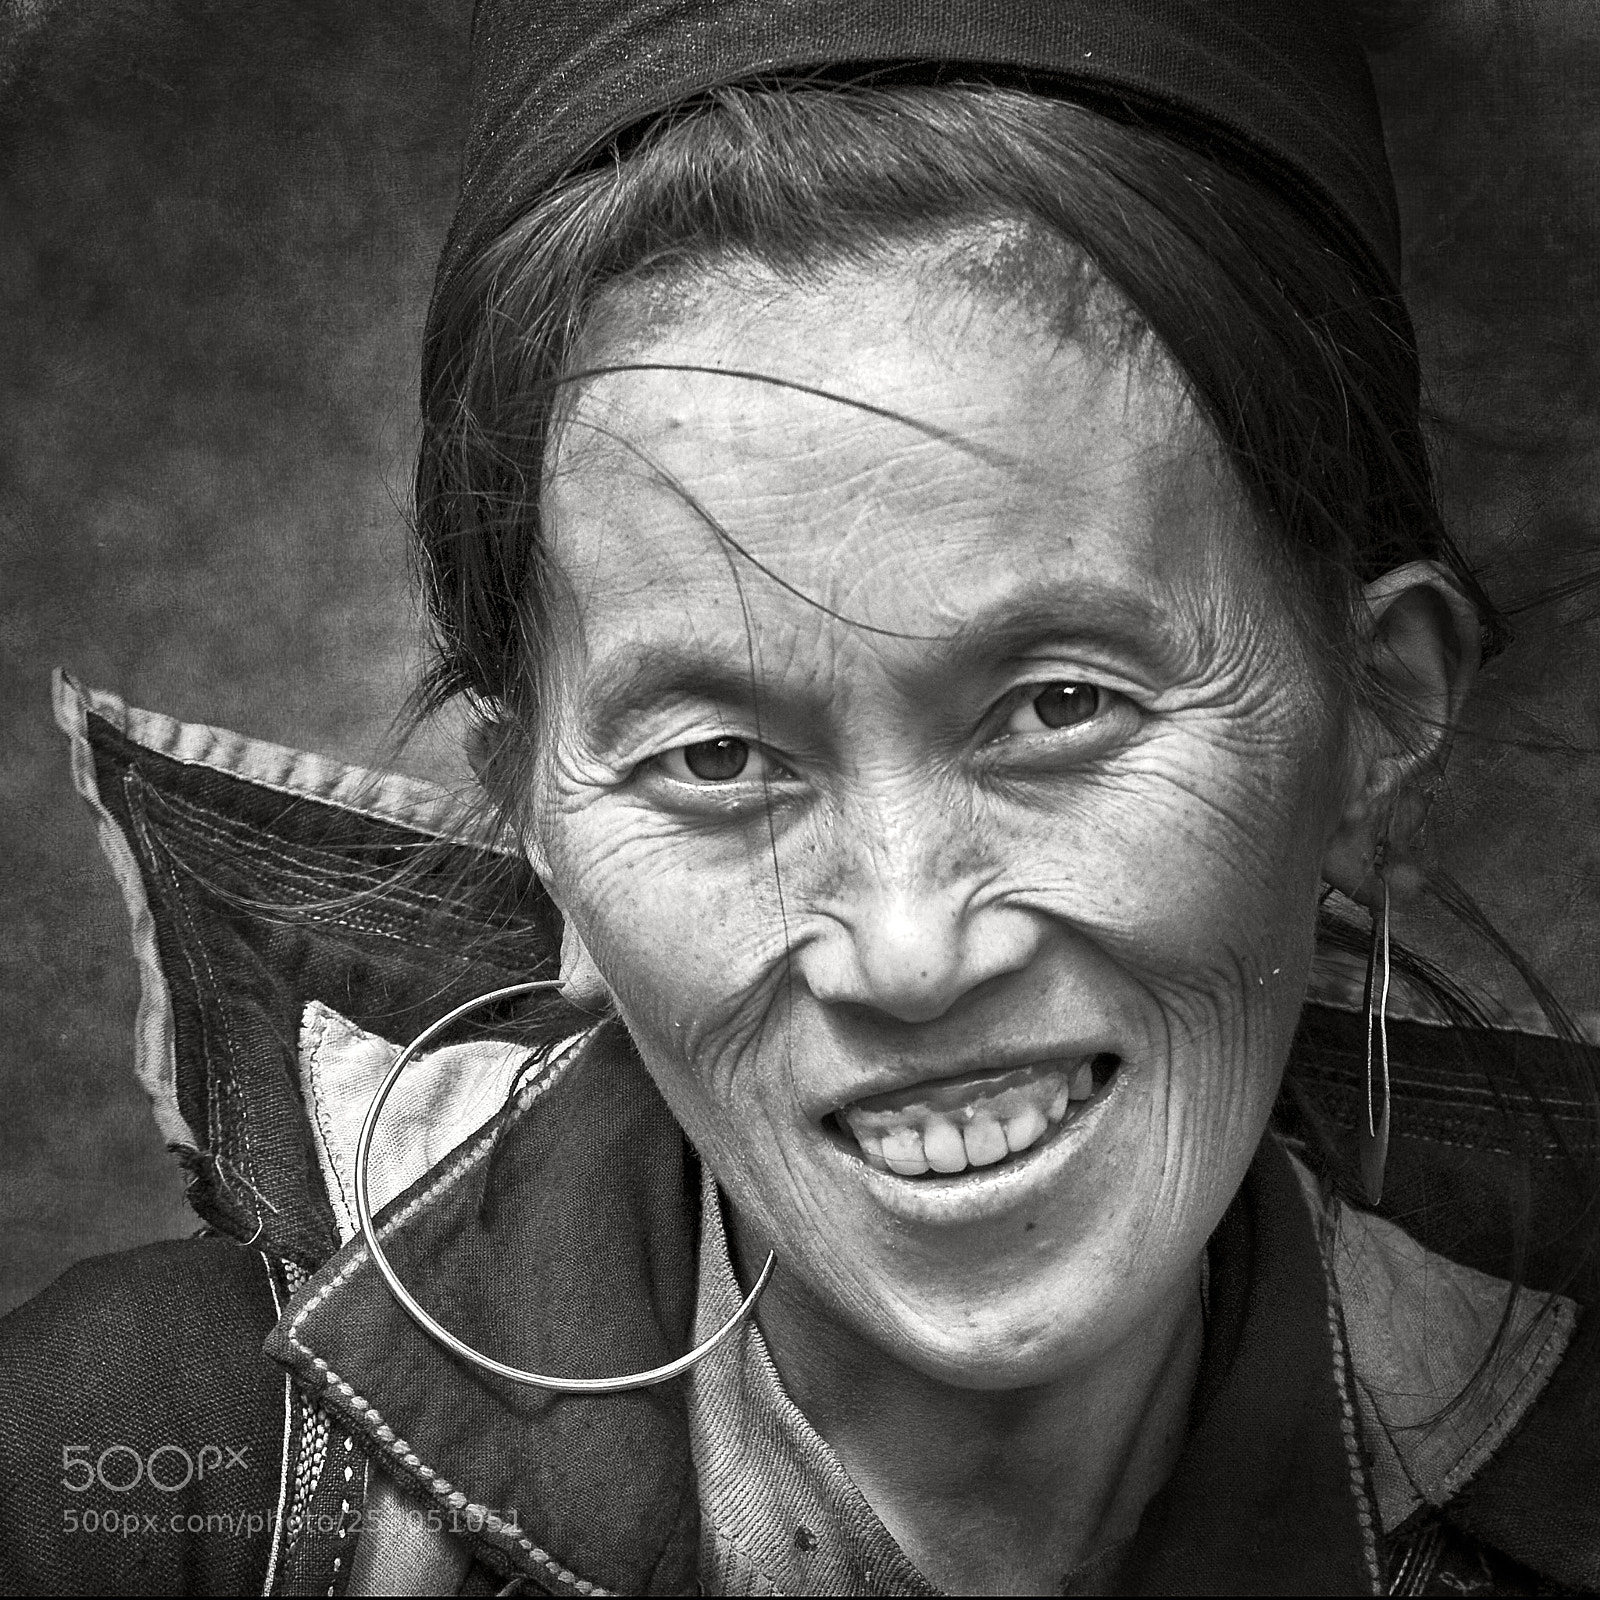 Nikon D200 sample photo. Hmong portrait / viet nam photography